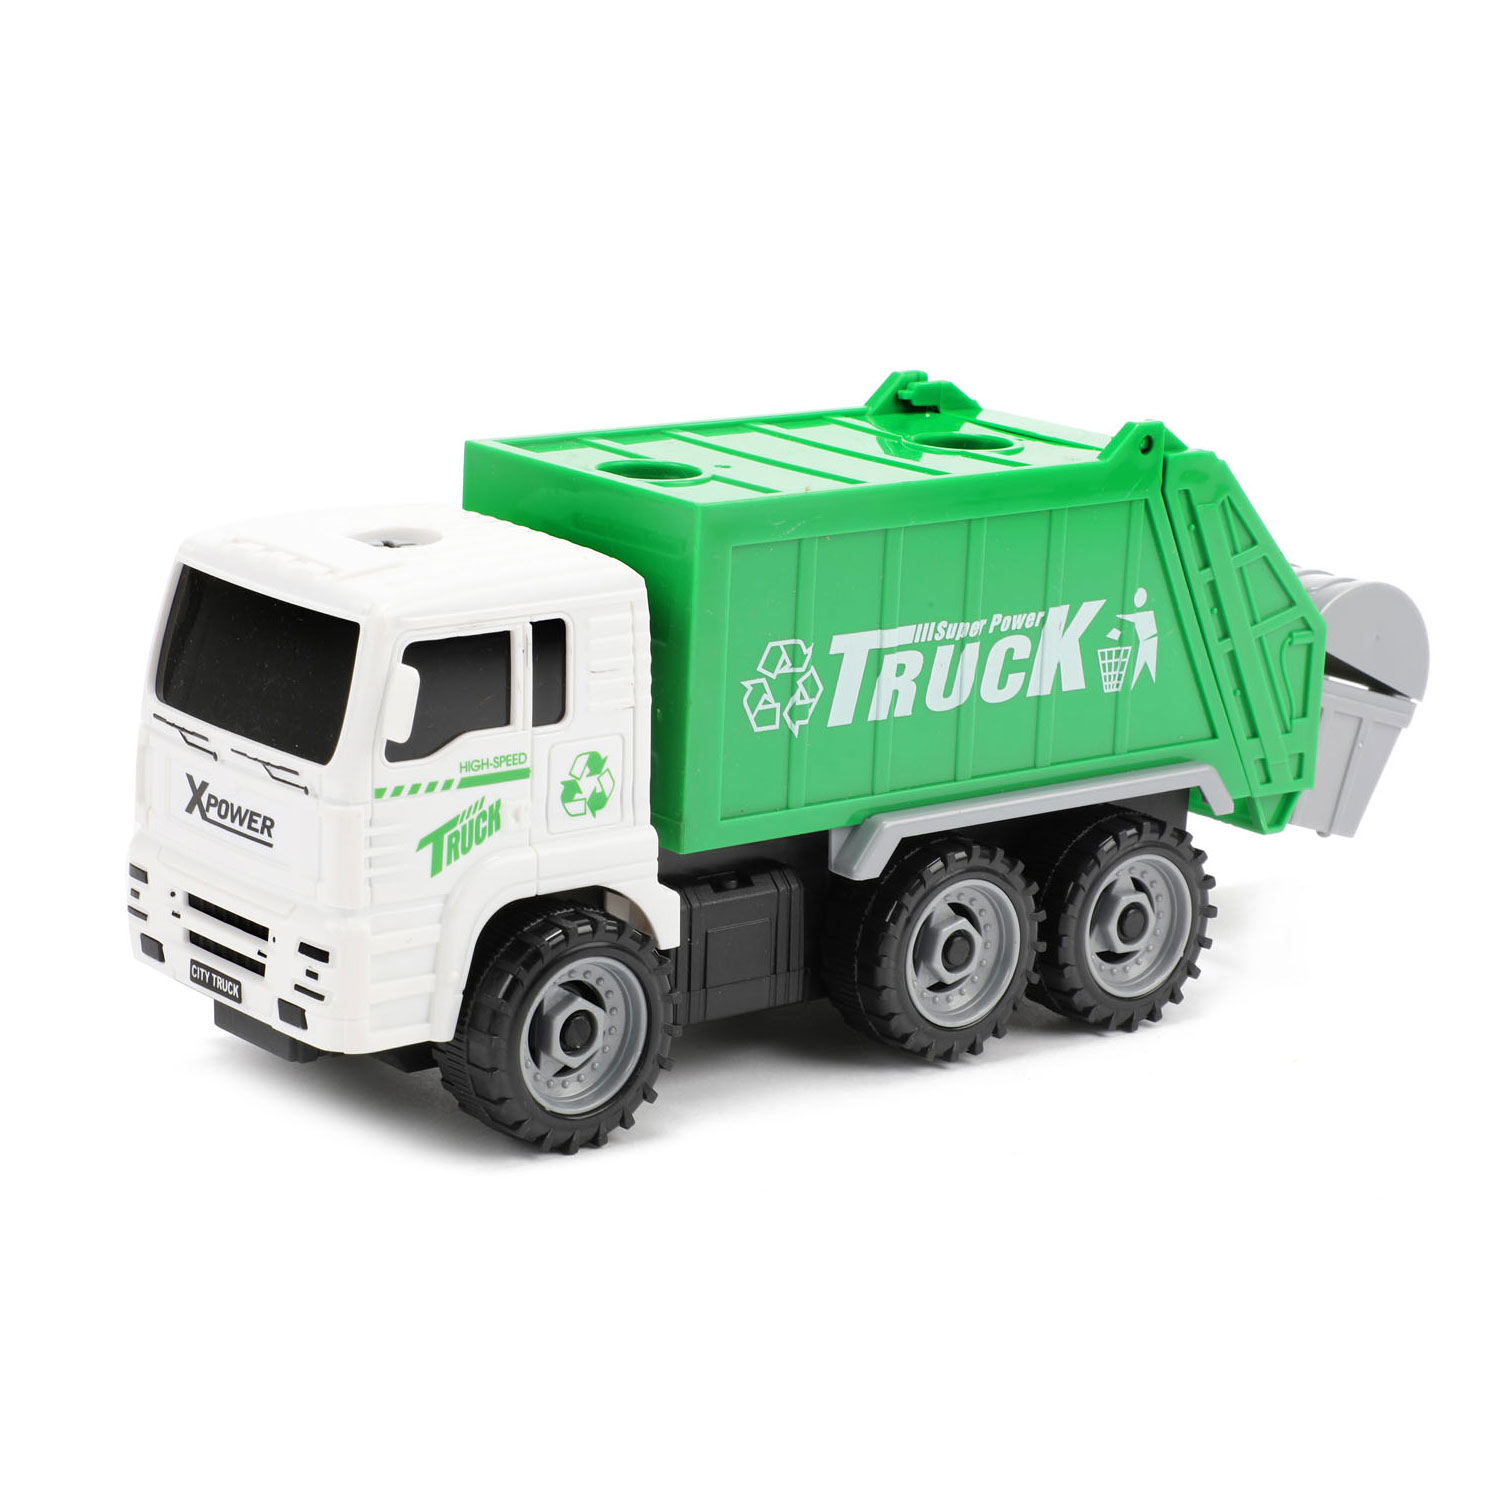 Cars & Camions Camion à ordures avec poubelles à roulettes